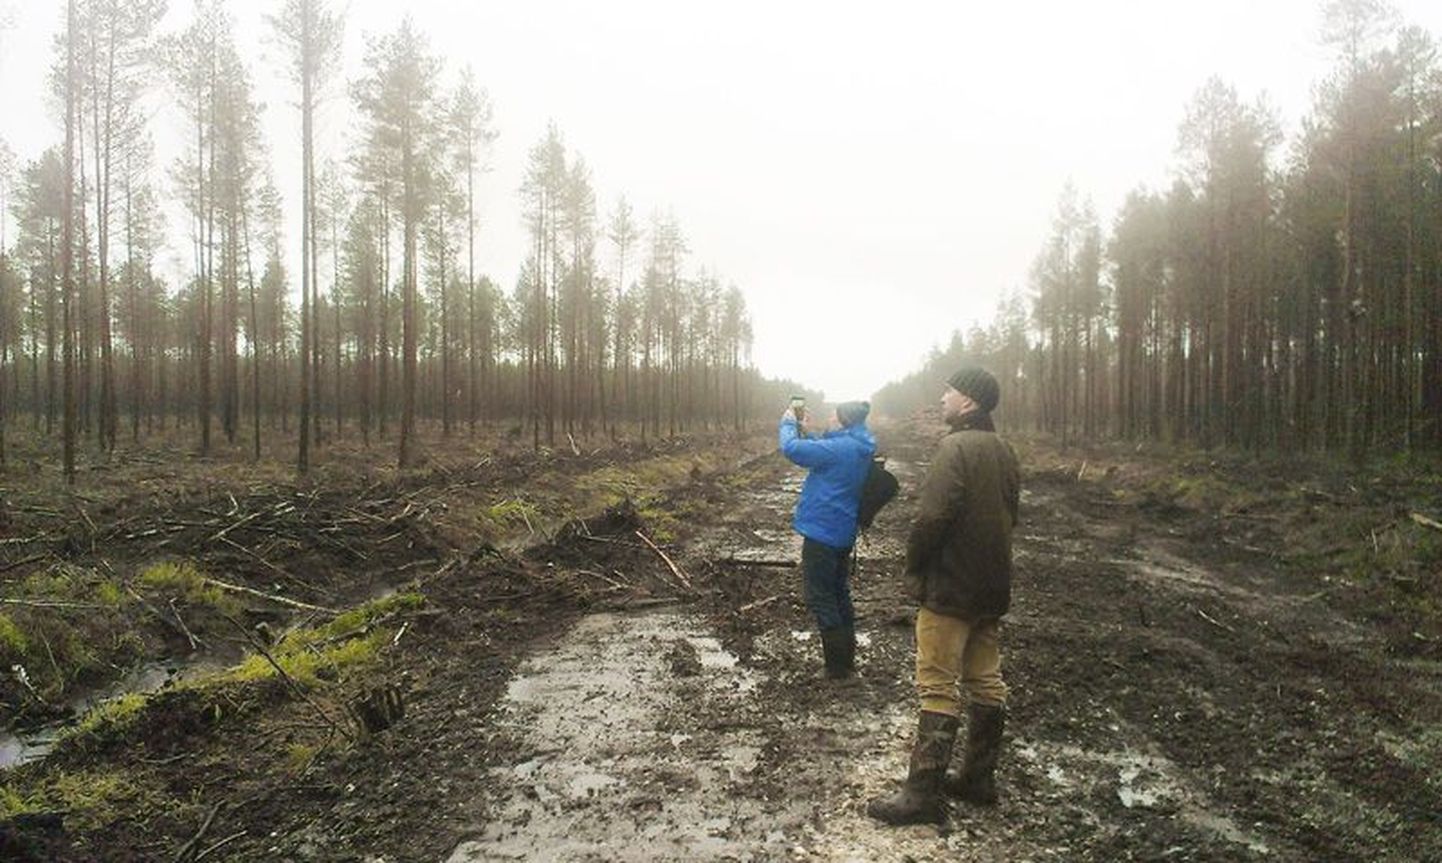 Keskkonnaminister Marko Pomerants pildistab RMK juhi Aigar Kallase silme all esimest osa Mardimäe sihtkaitsevööndist, kus metsaharvendus tehtud, kuid kraavid ootavad veel kinniajamist.